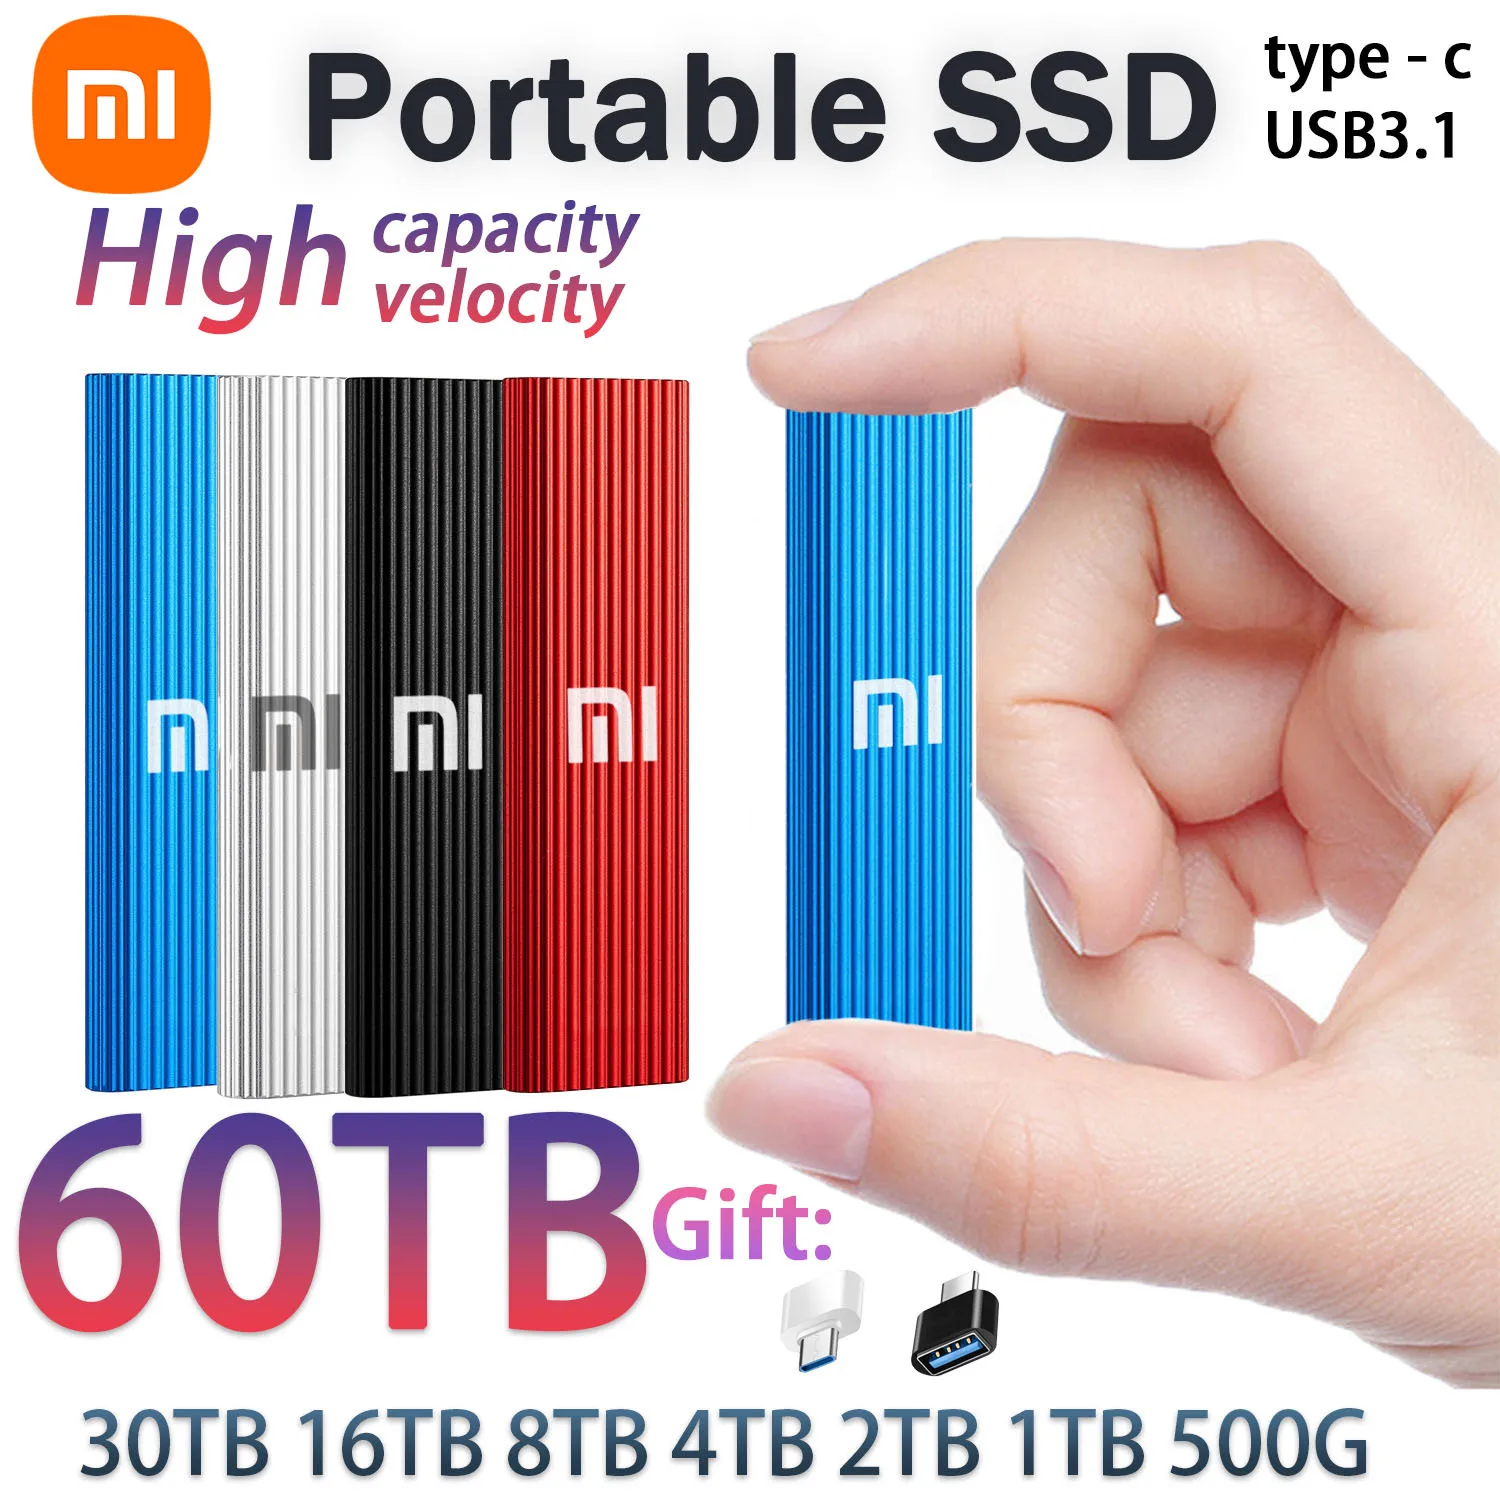 Xiaomi Оригинальный НОВЫЙ Портативный SSD Жесткий диск 60 ТБ 1 ТБ SSD Высокоскоростной Внешний жесткий диск M.2 Накопитель USB 3.1 Интерфейс Mass Storage